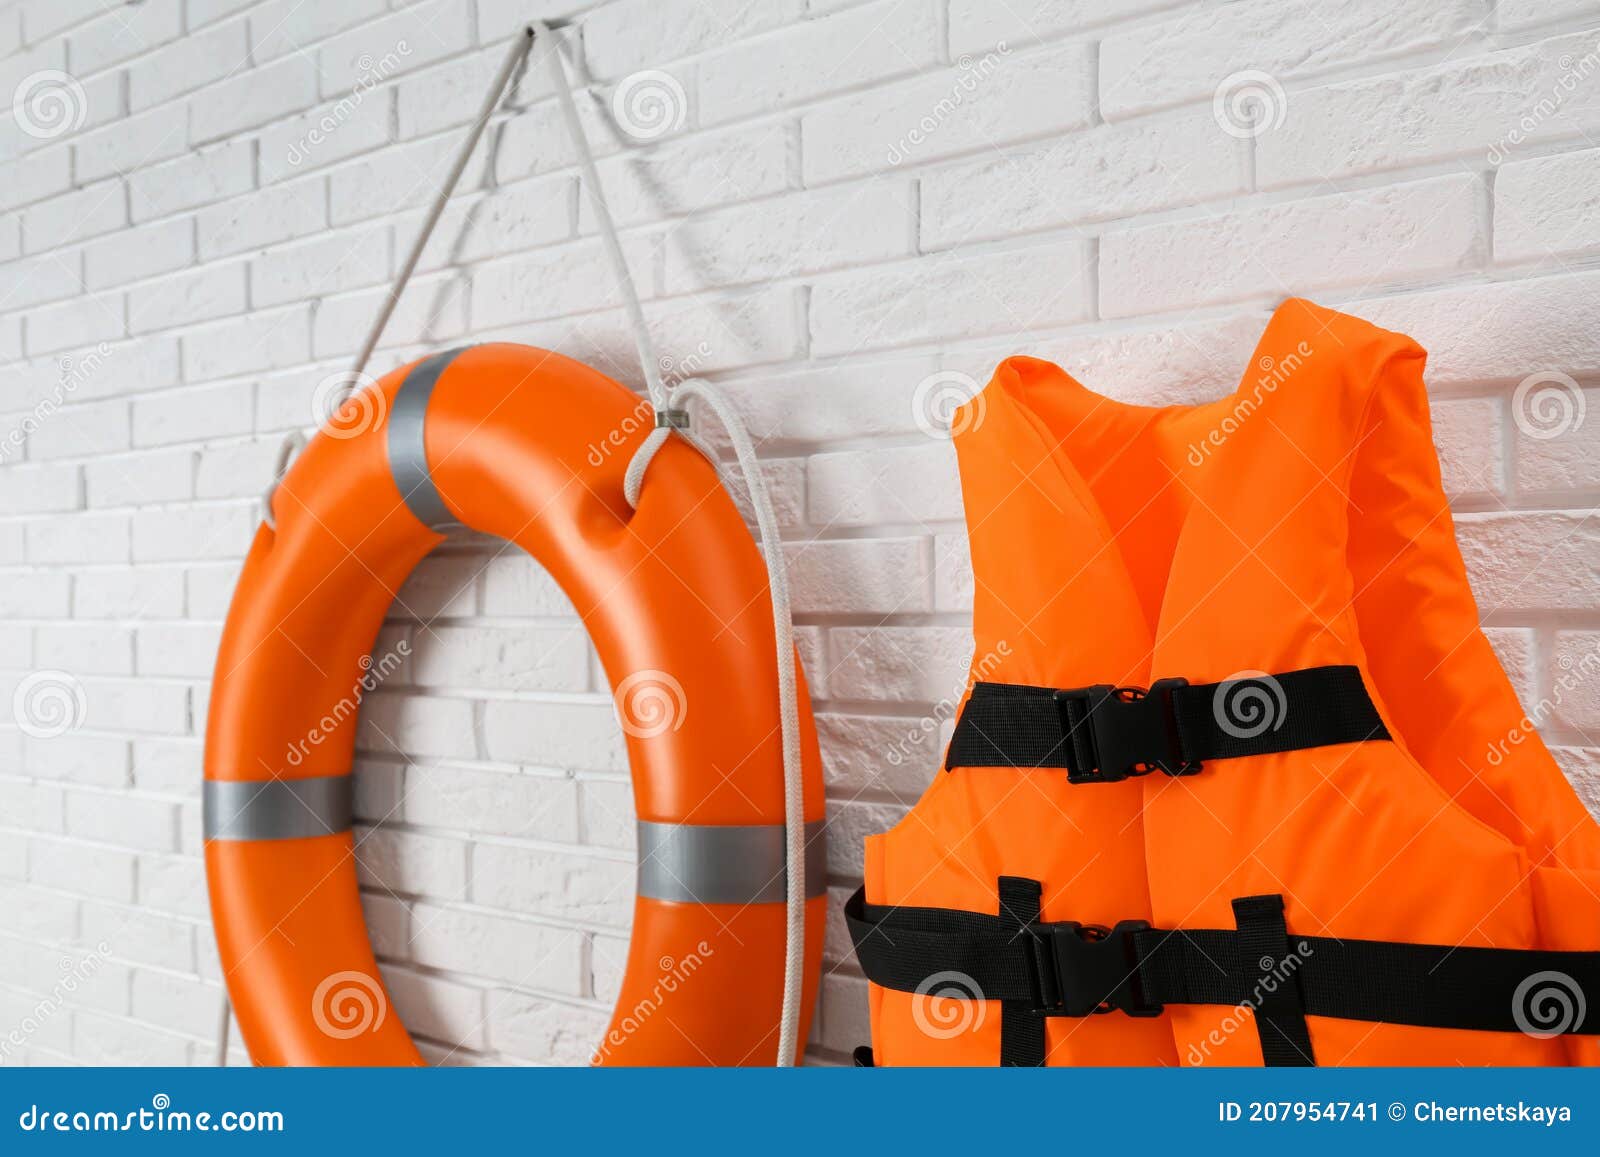 Orange Life Jacket and Lifebuoy on White Brick Wall. Rescue Equipment ...